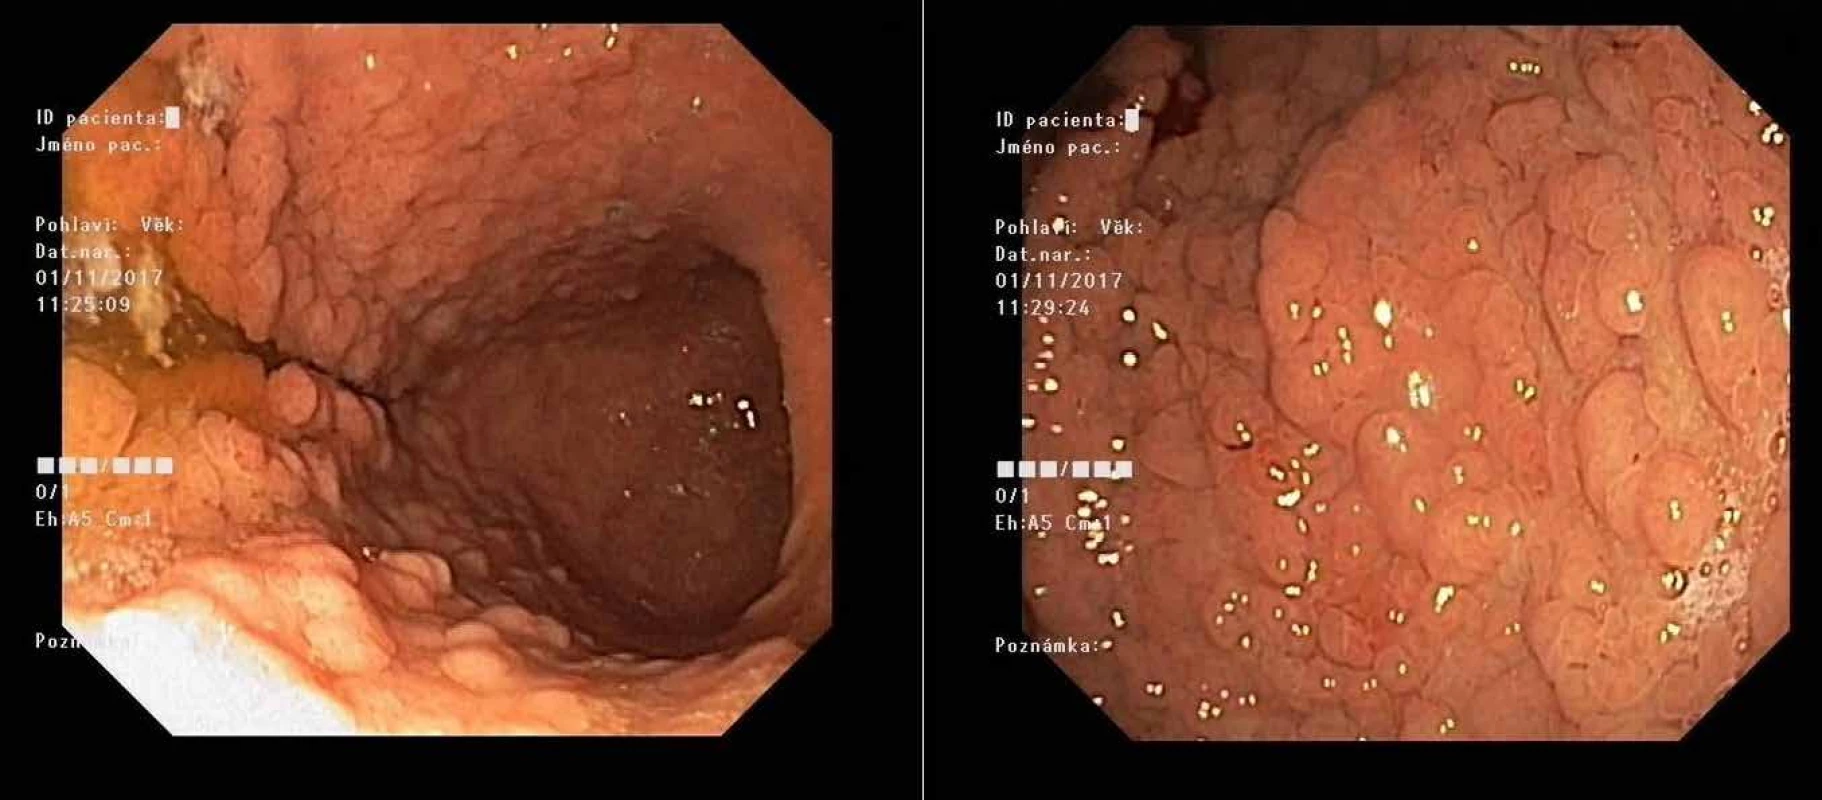 Masivní polypóza žaludku u mladého pacienta při syndromu GAPPS před preventivní gastrektomií